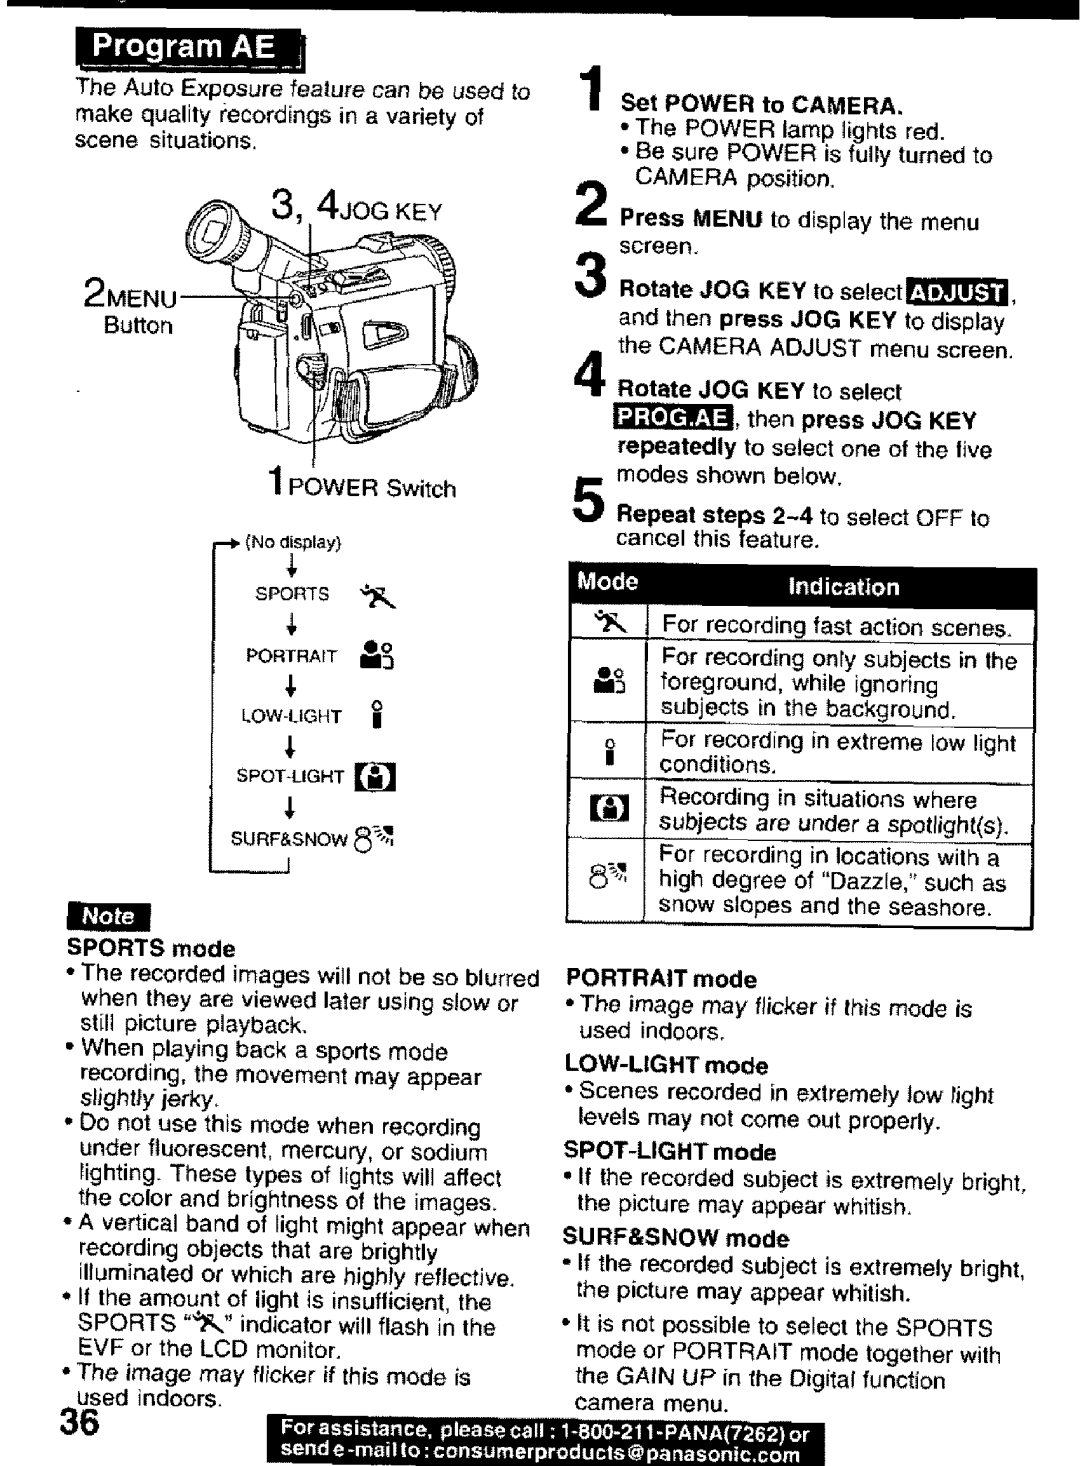 Panasonic PV-DV101 manual 2MENt Button, I Rt, 4JOG KEY 